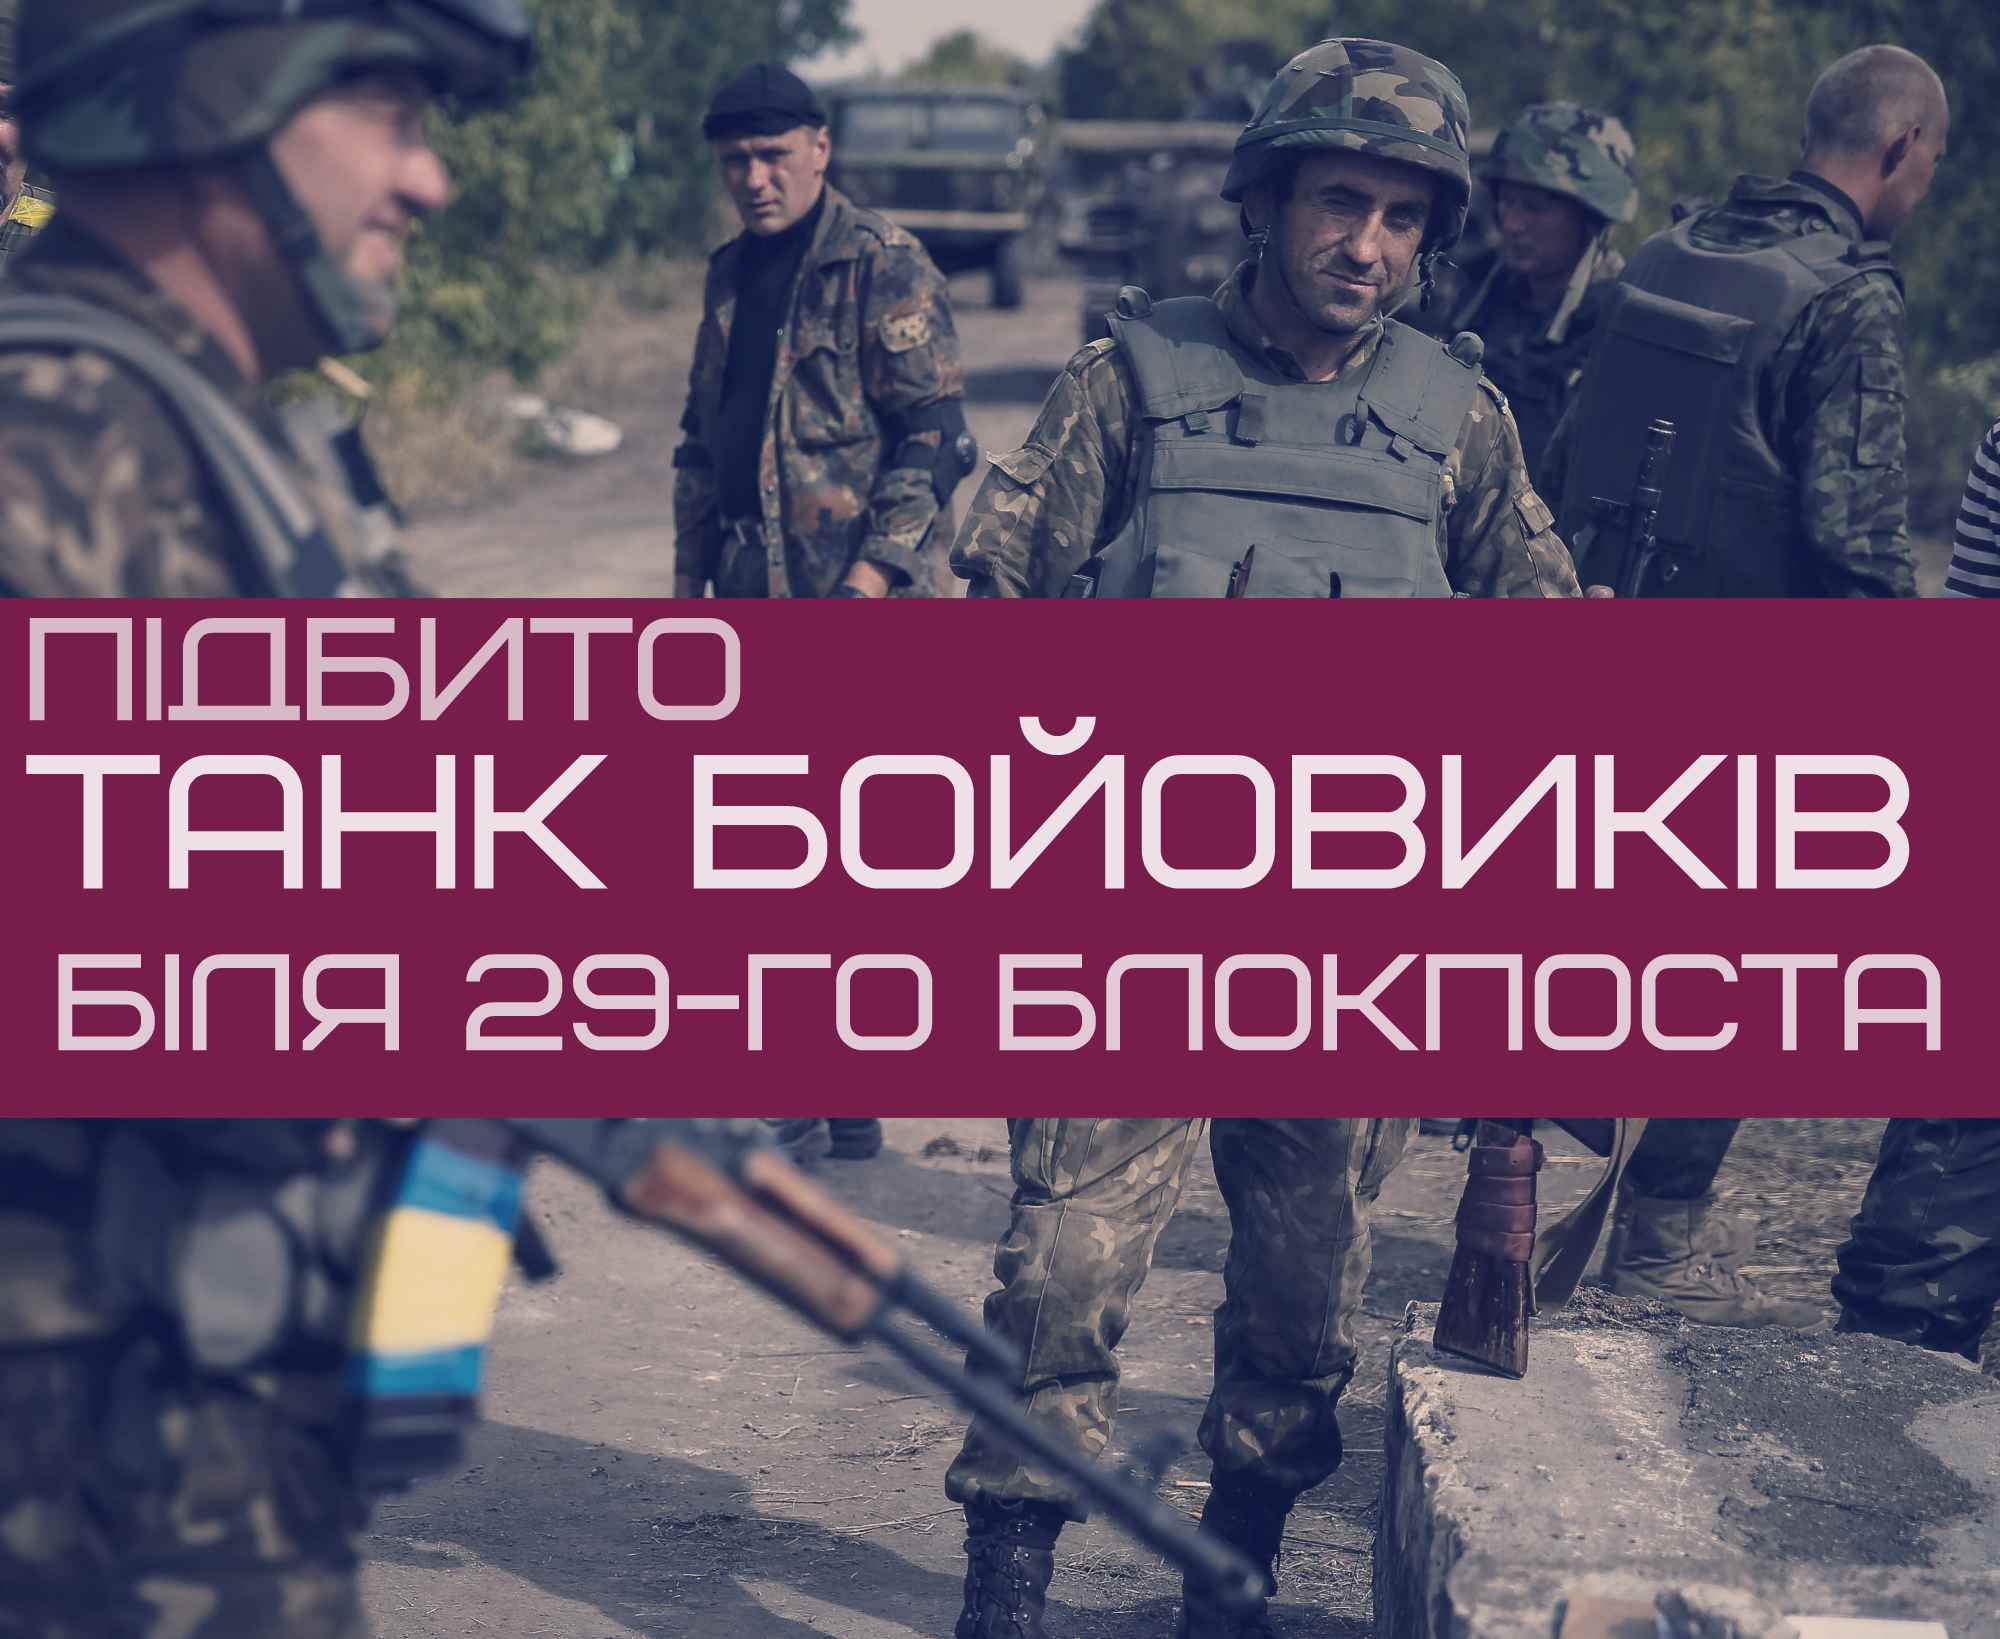 Українські військові підбили танк біля 29-го блокпоста